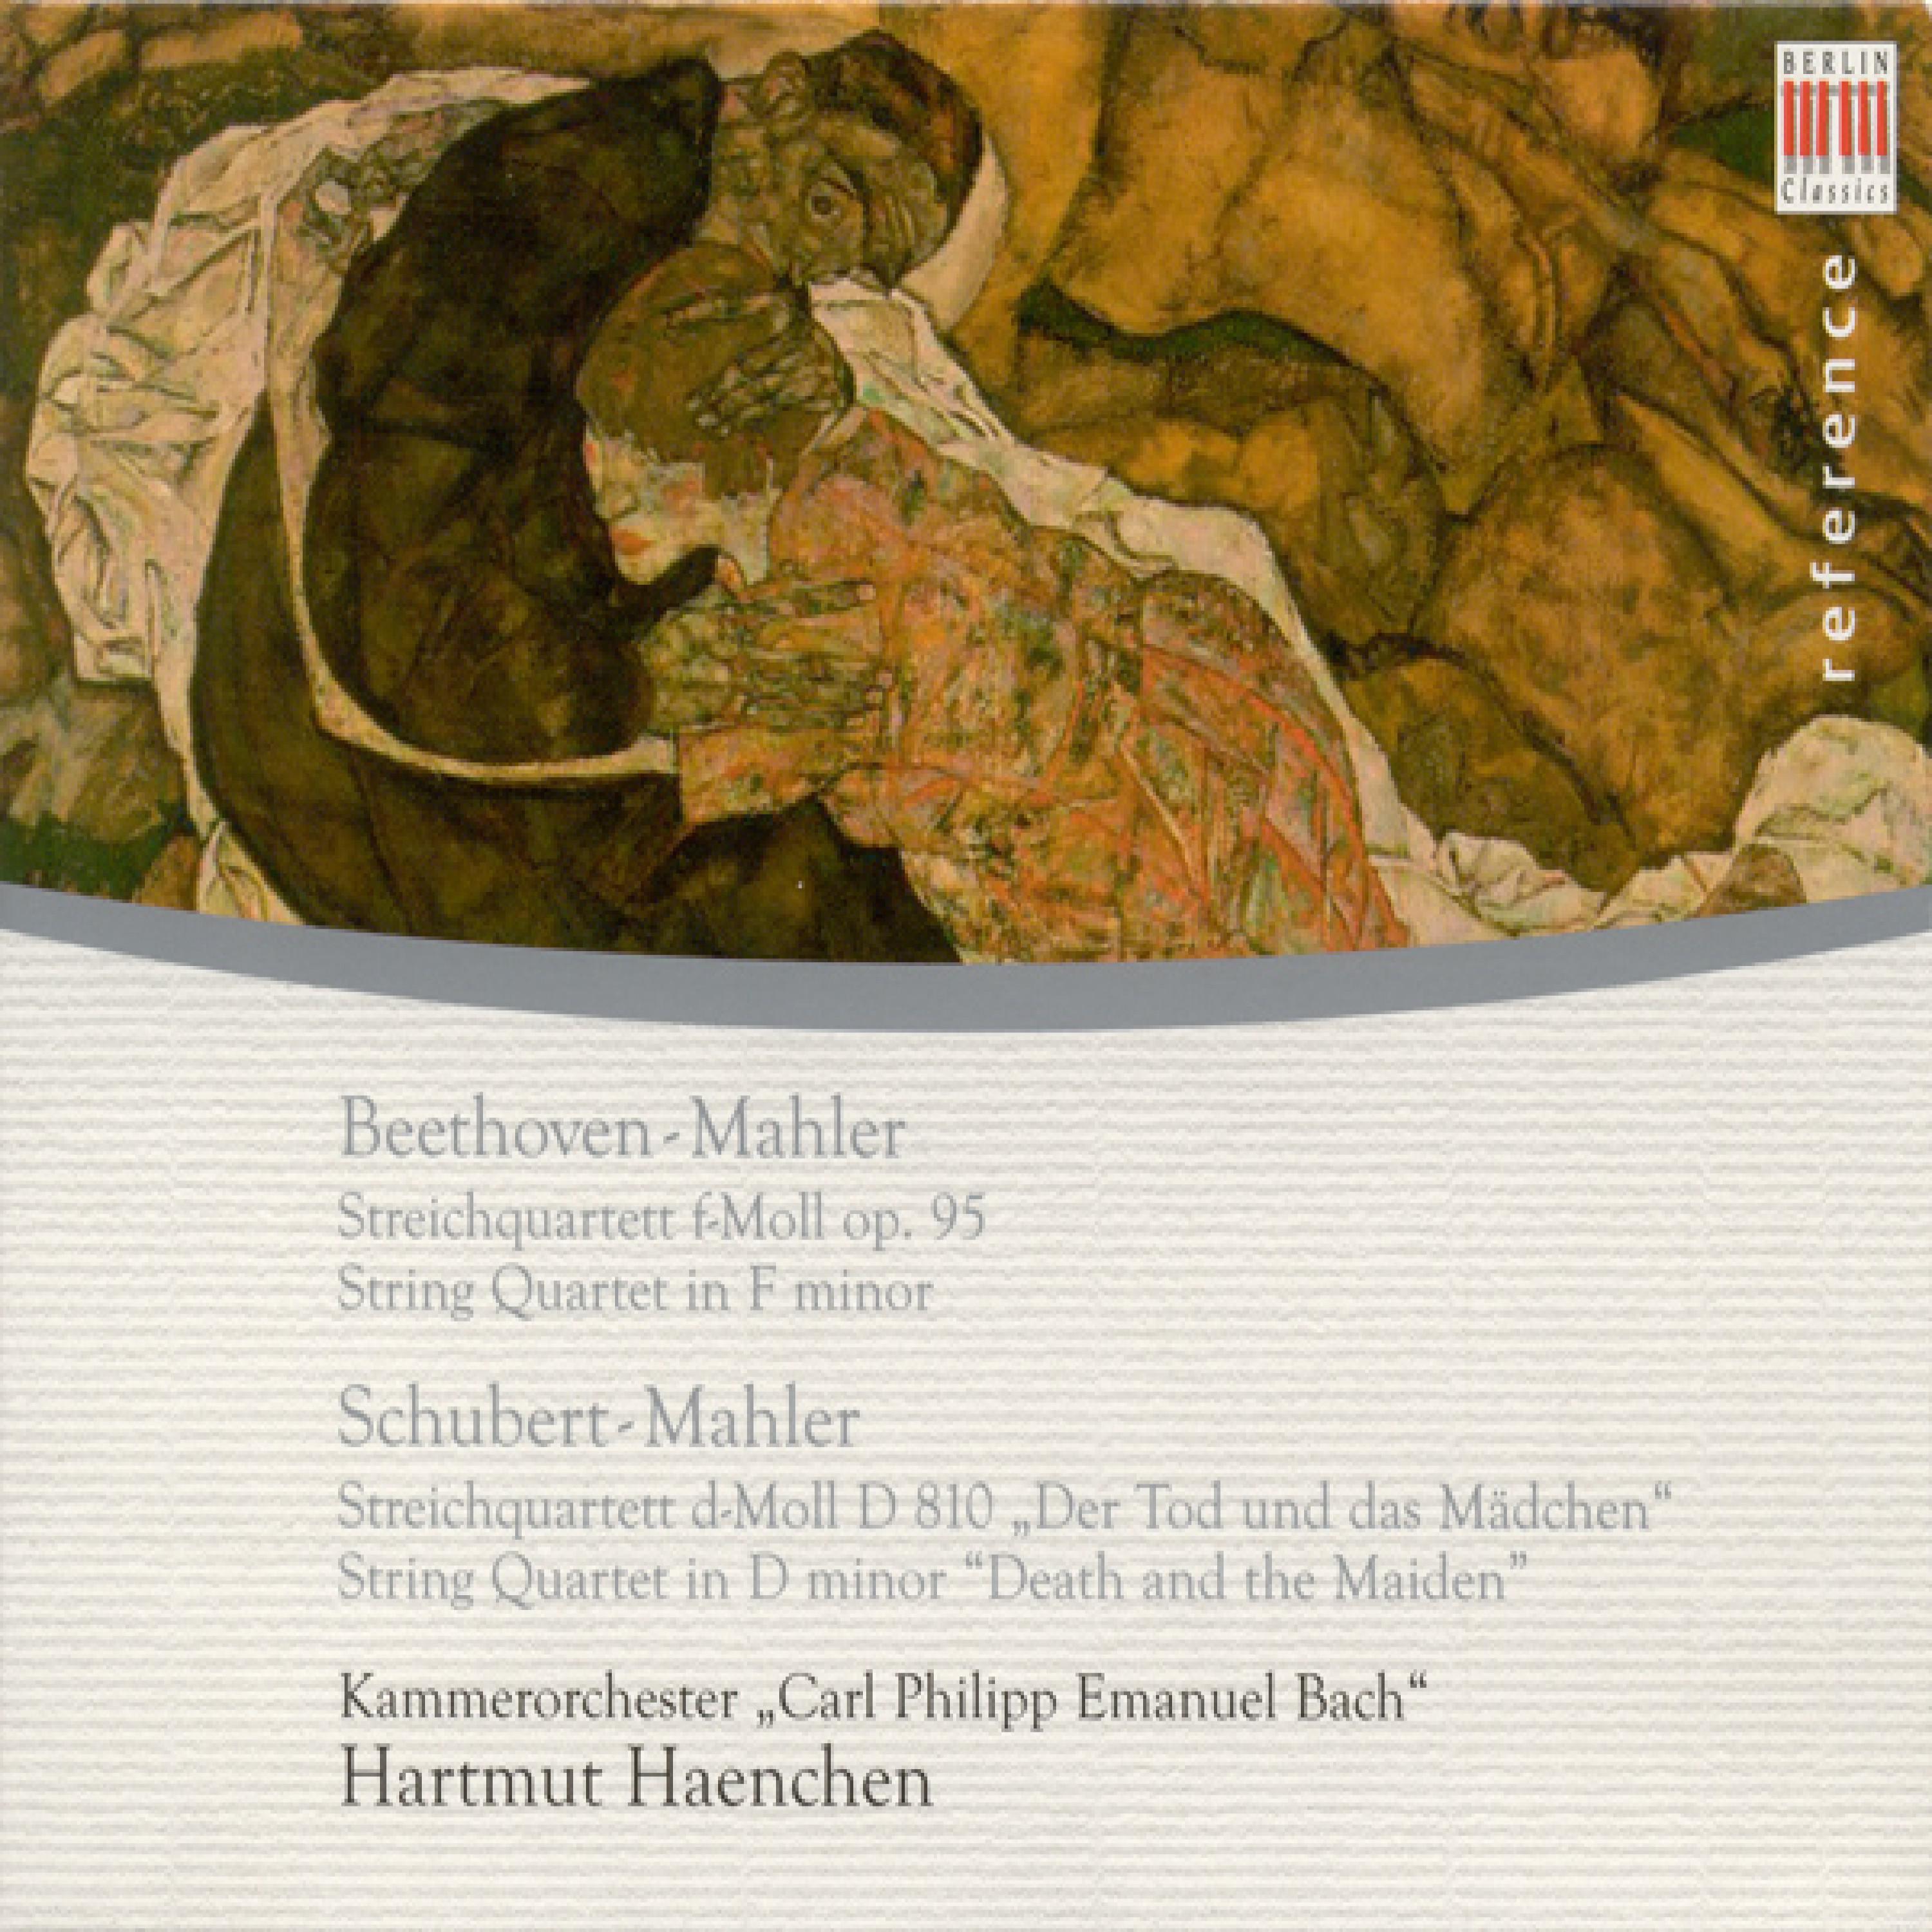 String Quartet No. 14 in D Minor, D. 810 "Death and the Maiden": III. Scherzo: Allegro molto - Trio